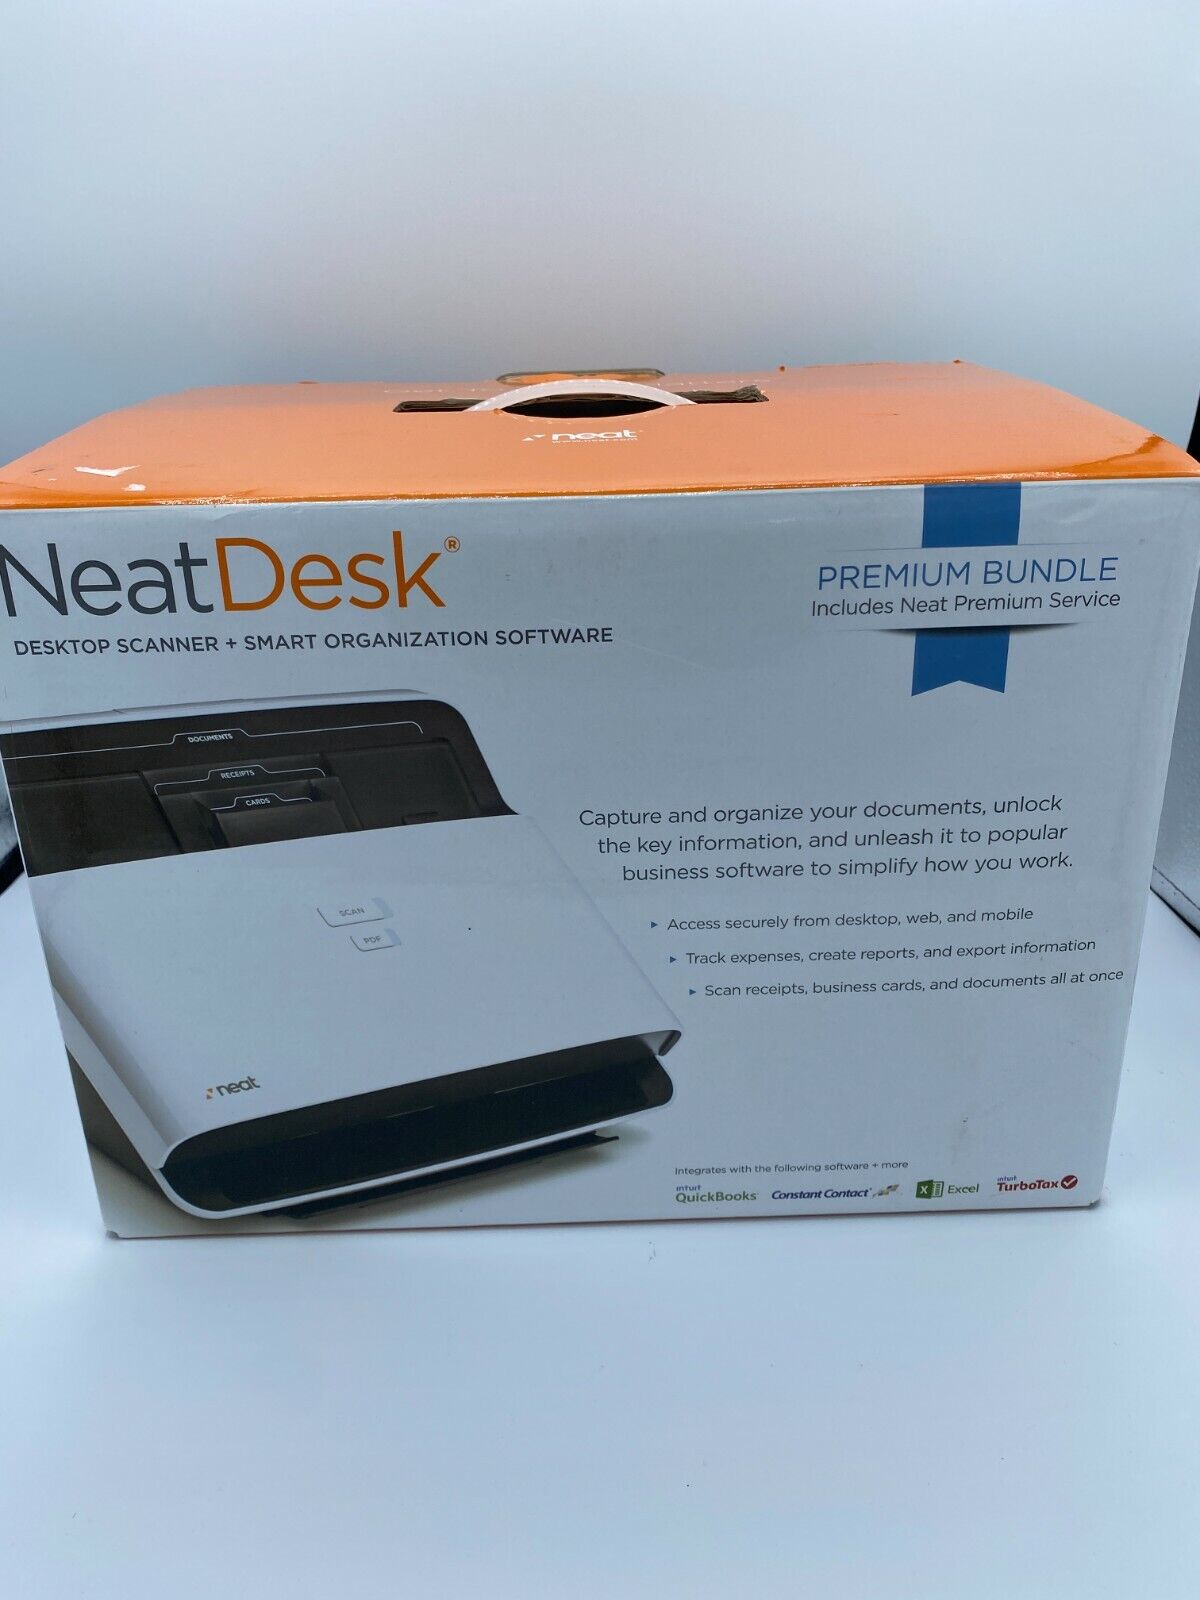 Neat Desk Scanner ND-1000 Smart Organization Software Mac & Windows Popularność sprzedaży wysyłkowej